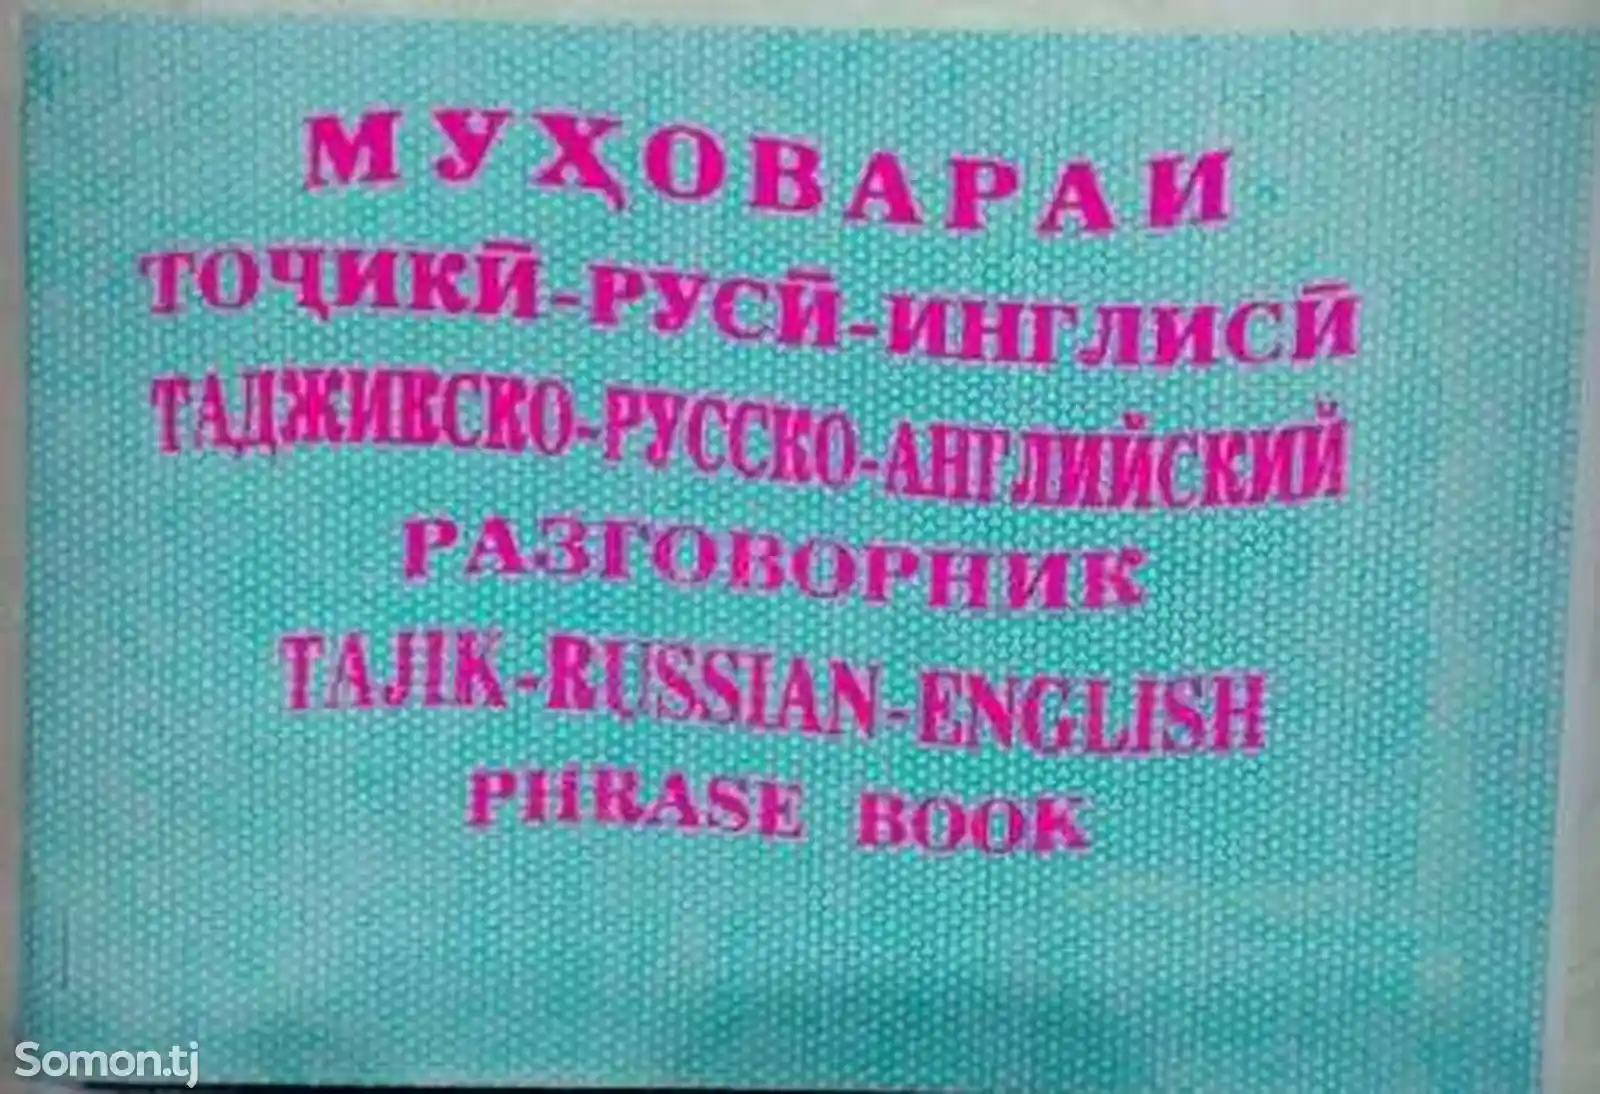 Муҳовараи тоҷикӣ-русӣ-англисӣ